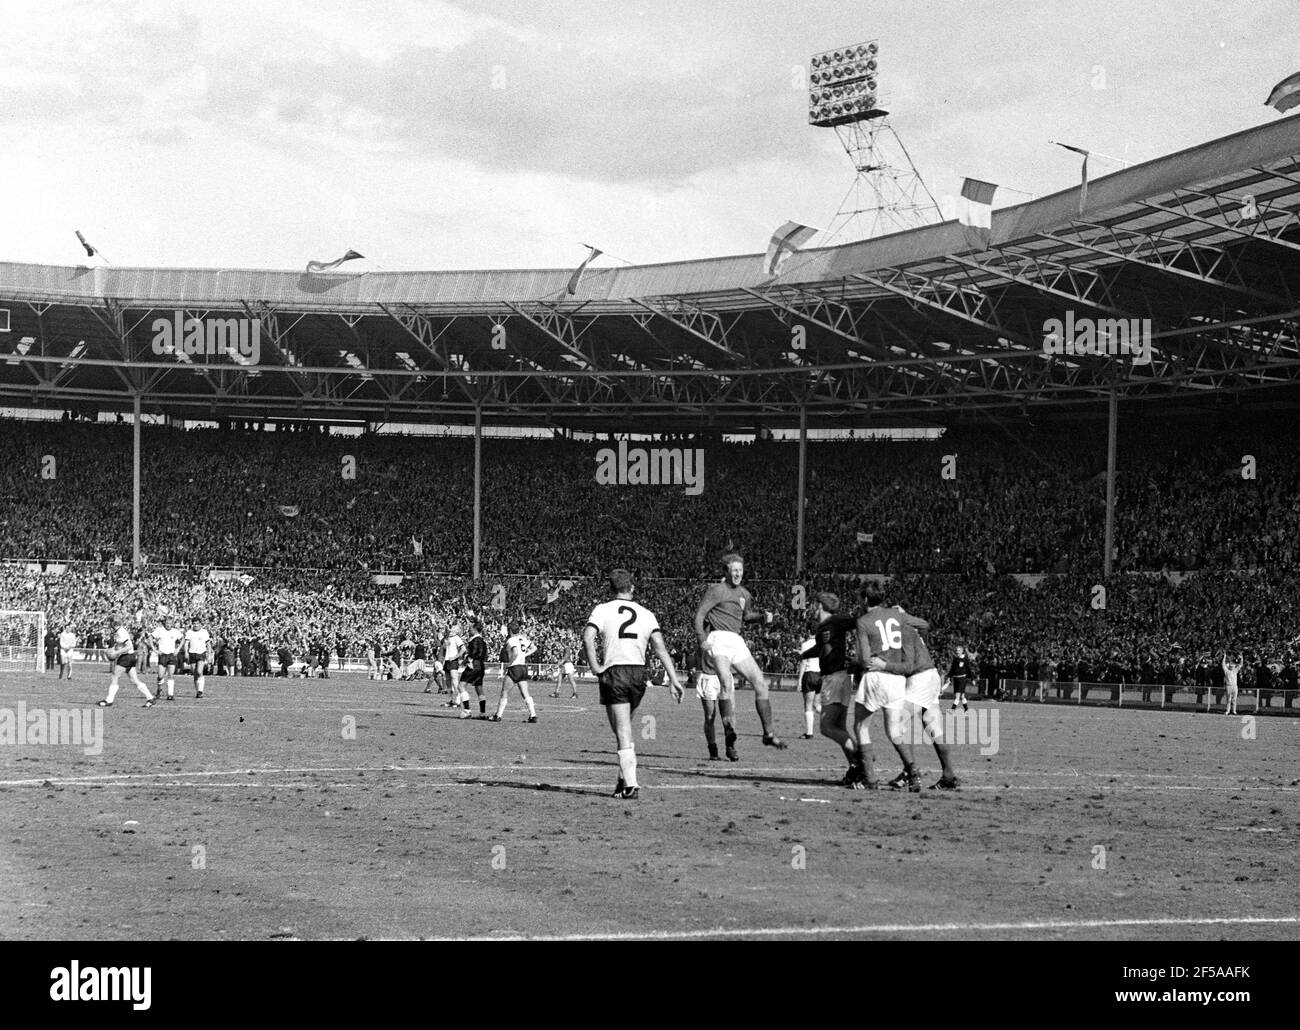 England gegen Westdeutschland WM-Finale 1966, Wembley Stadium Englands Jack Charlton springt zur Feier des 16-minütigen Tores von Martin Peters (18th). Foto von Tony Henshaw Archive Stockfoto